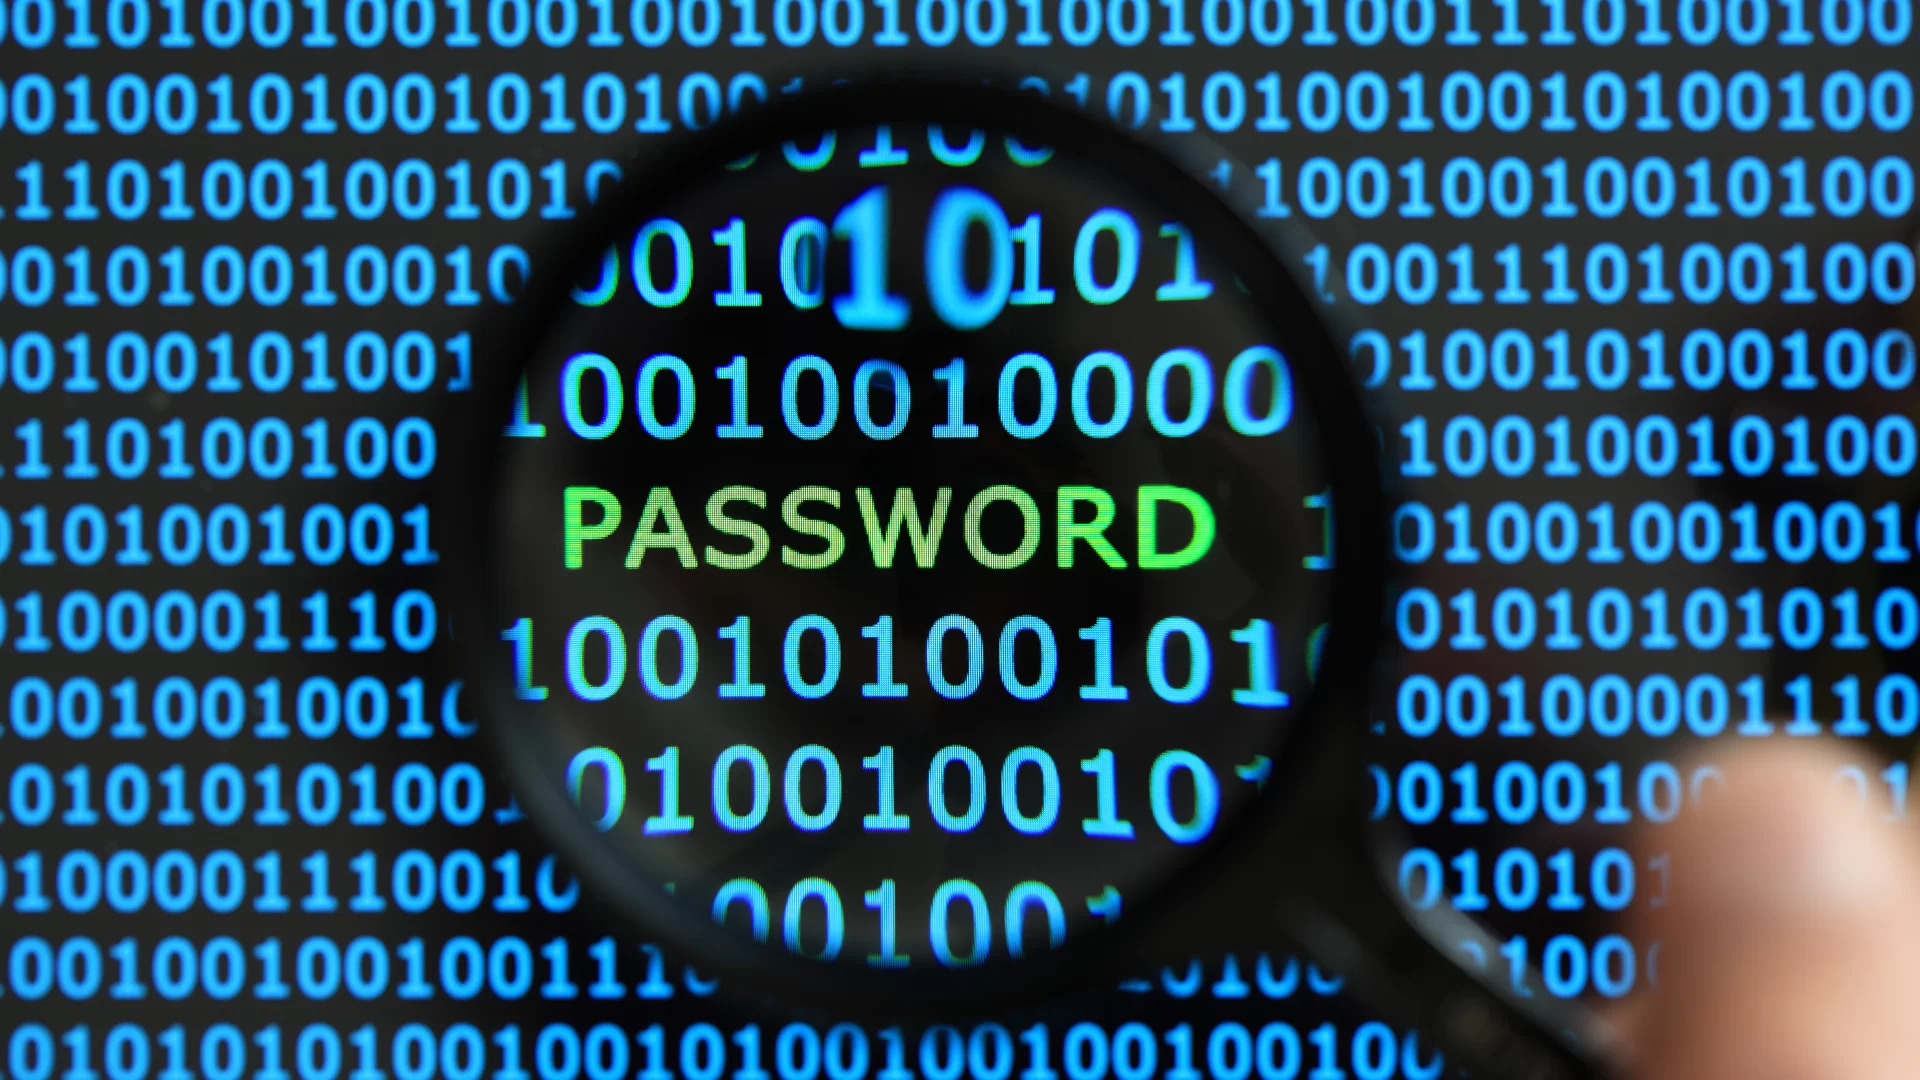 Passwordstate Password Manager’da Kritik Güvenlik Açığı Var!